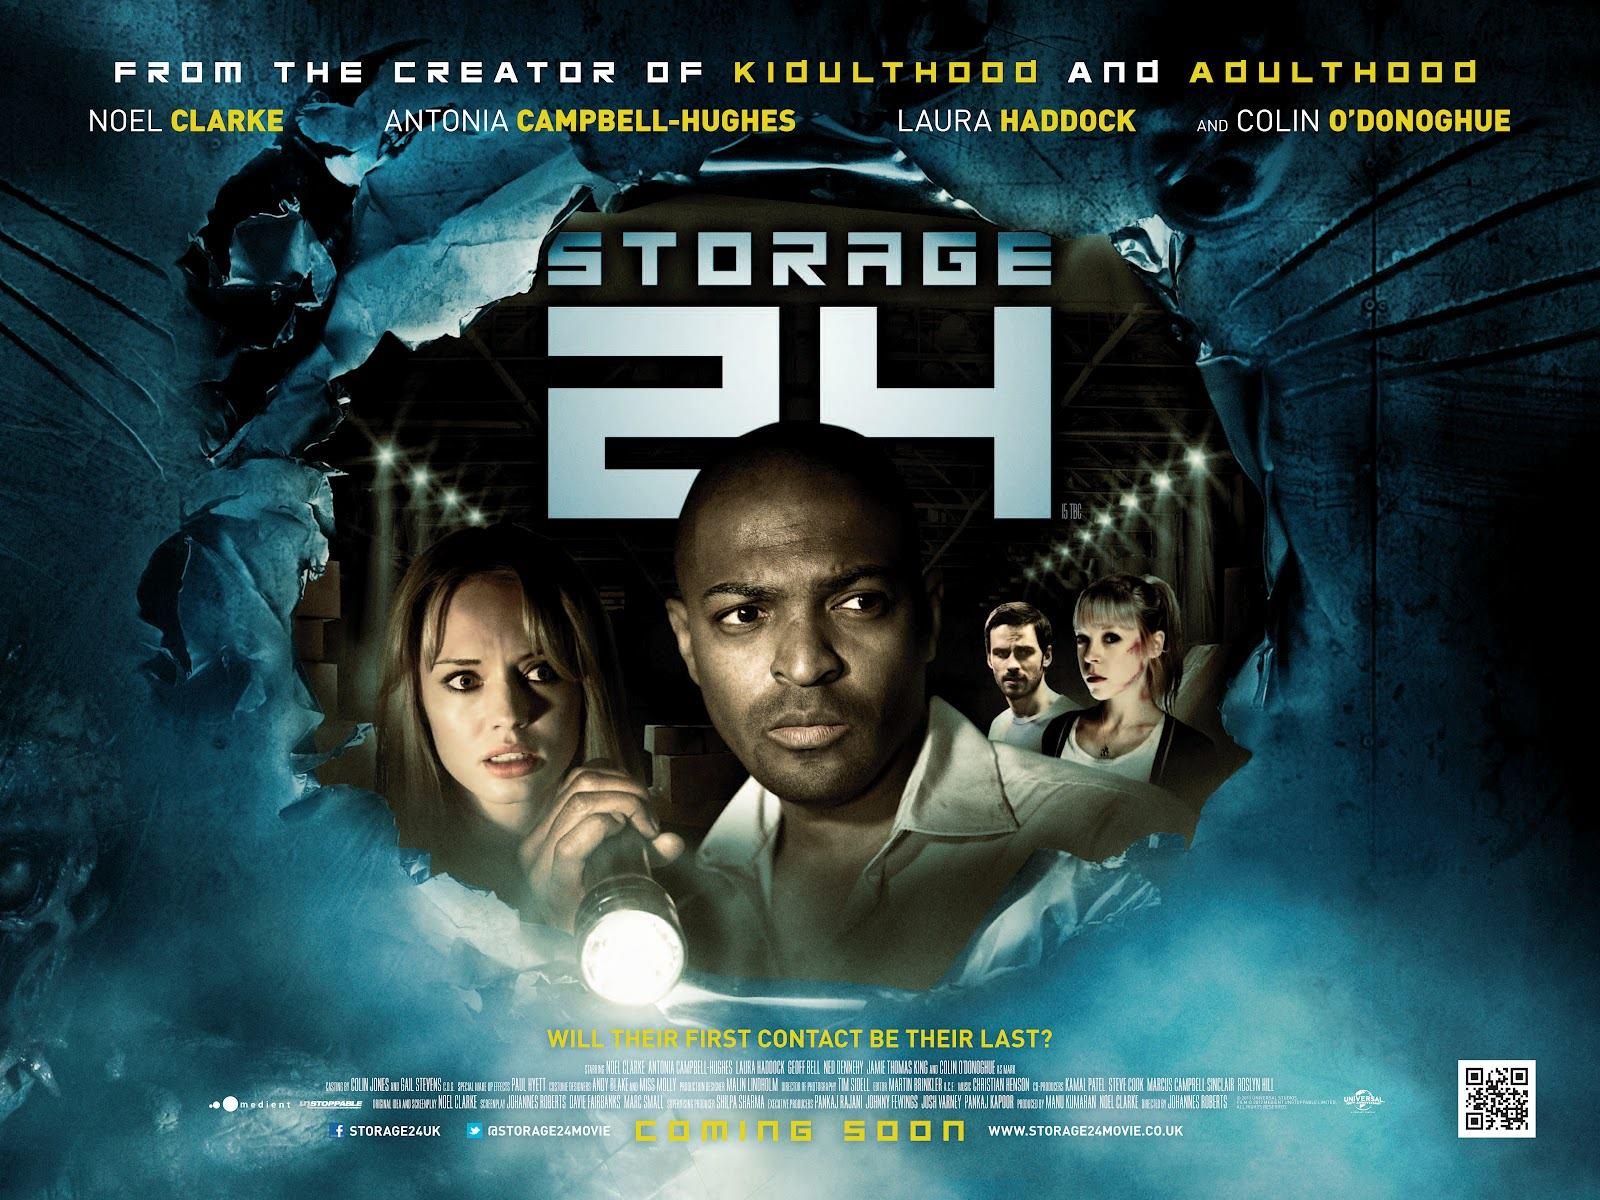 Постер фильма Хранилище 24 | Storage 24